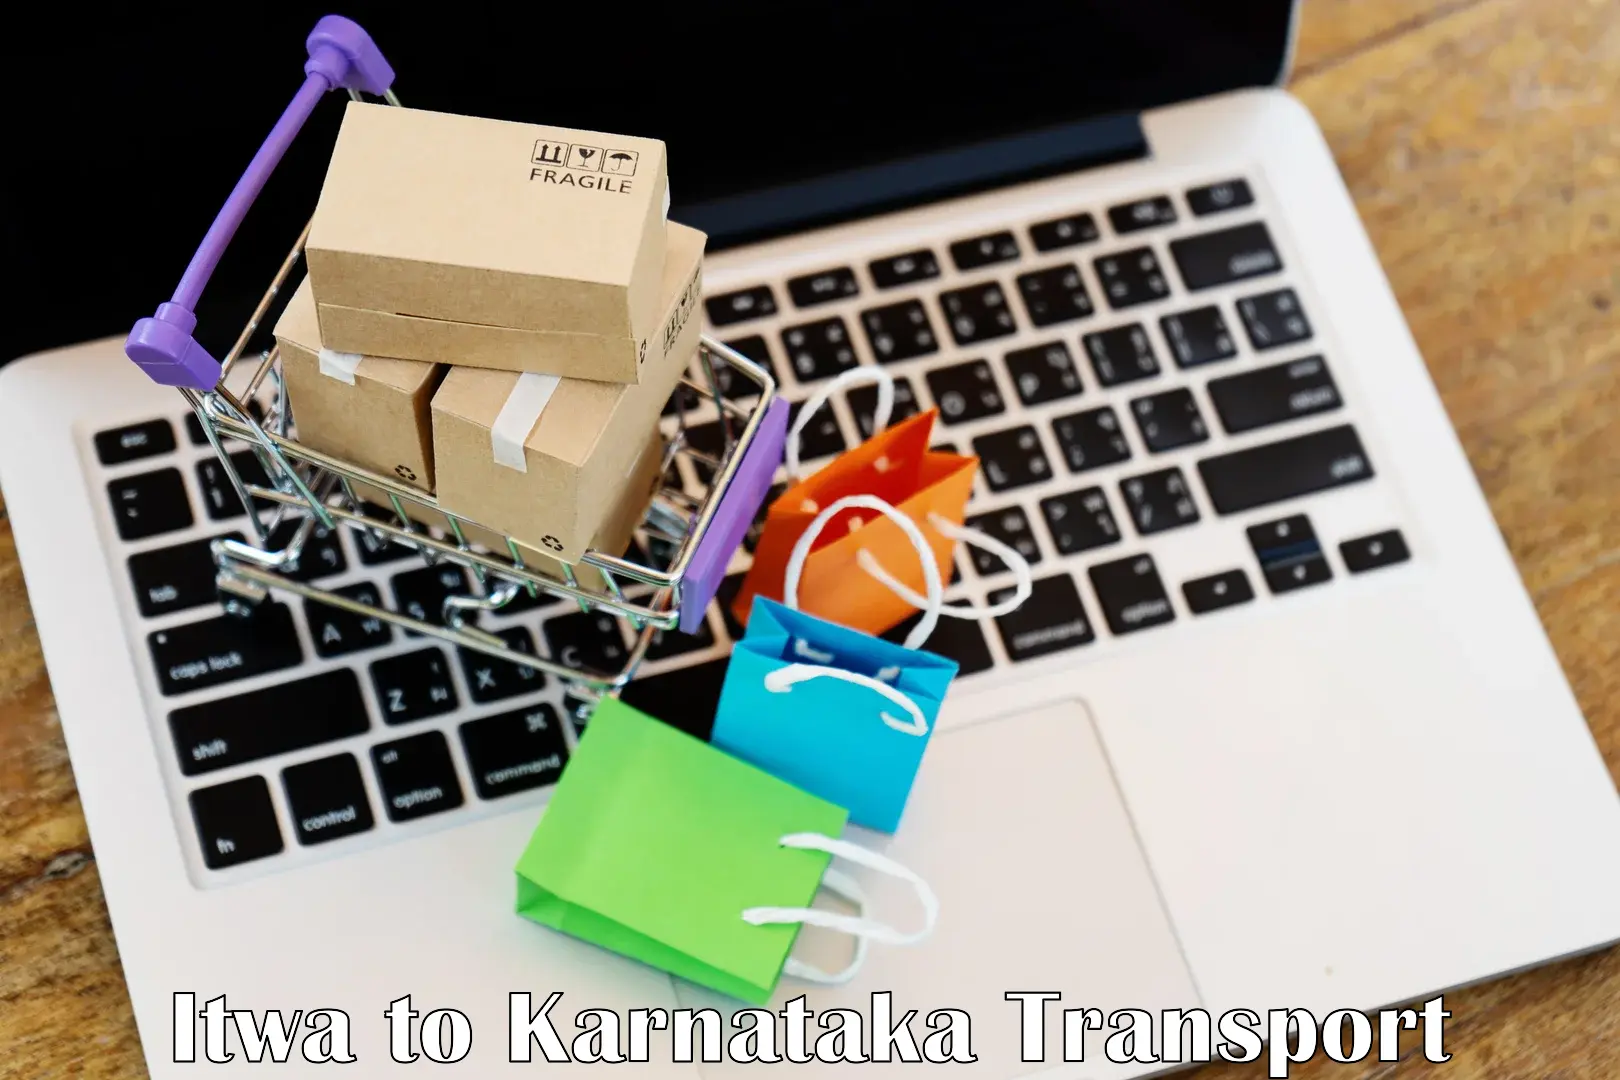 Online transport booking Itwa to Karnataka